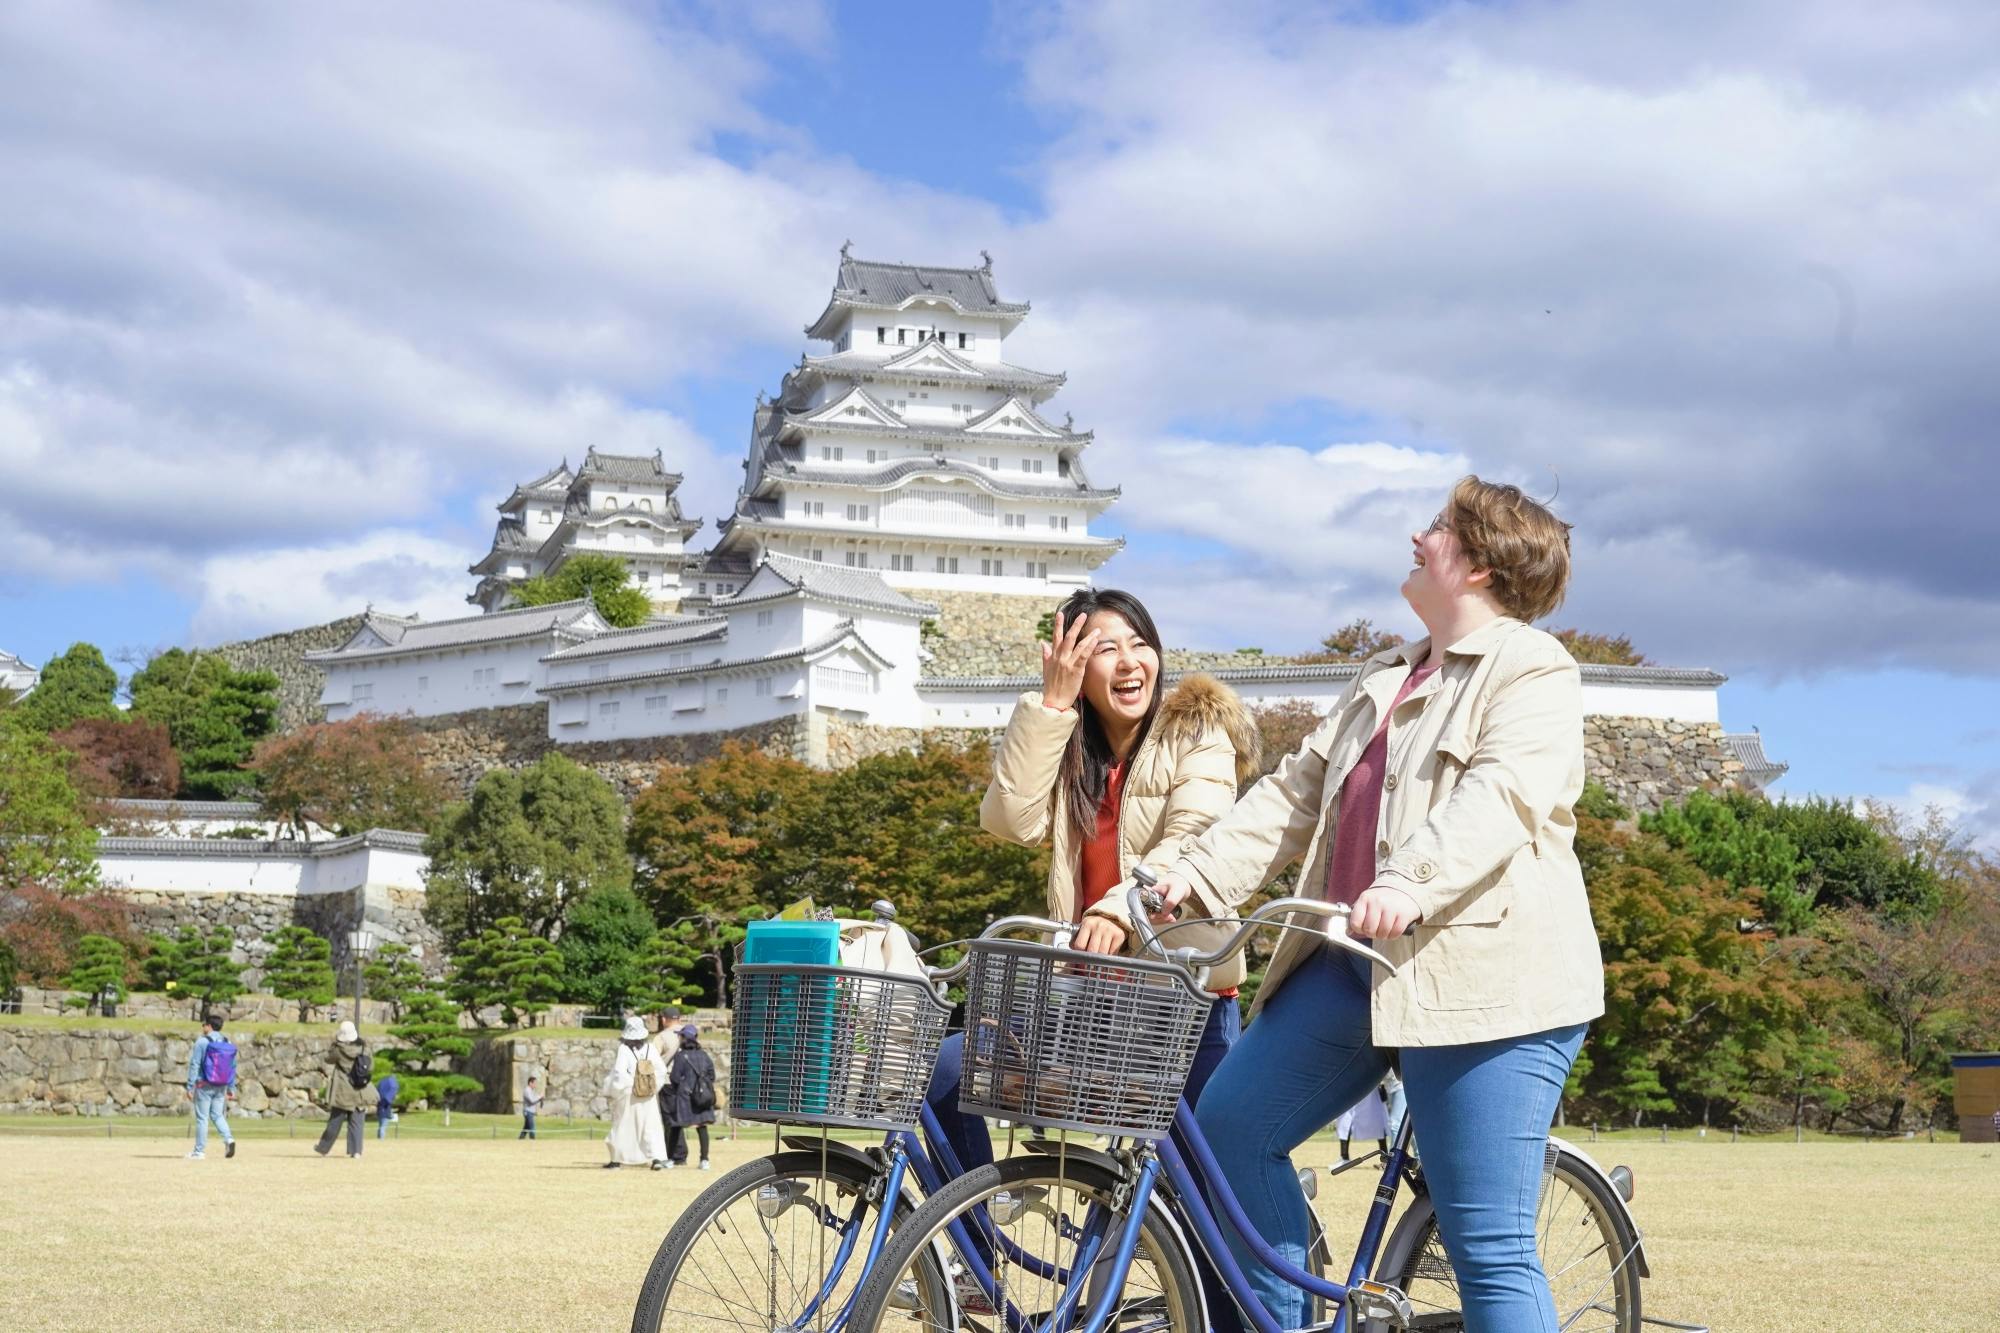 Excursão guiada de bicicleta pela cidade do castelo de Himeji com almoço